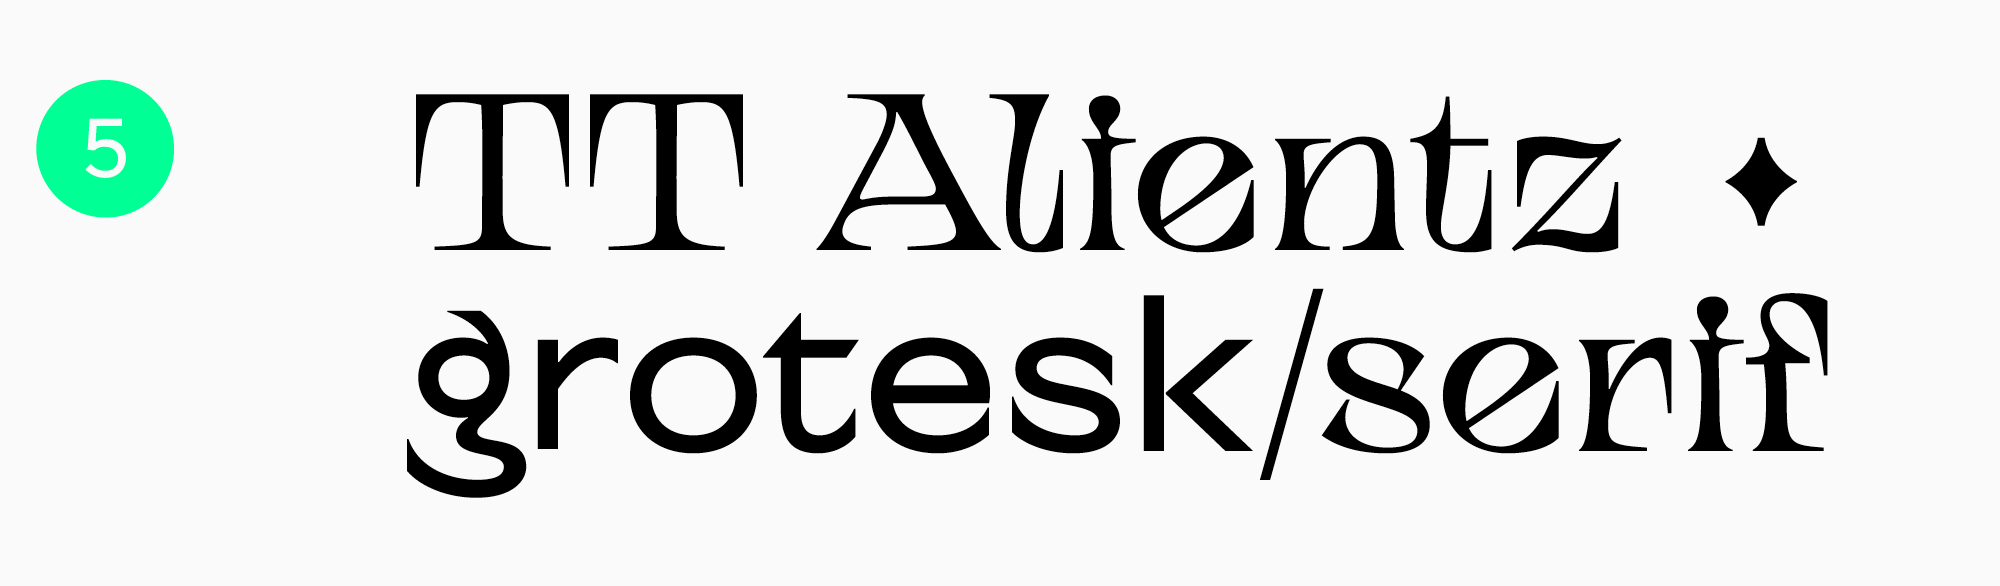 TT Alientz poster typeface